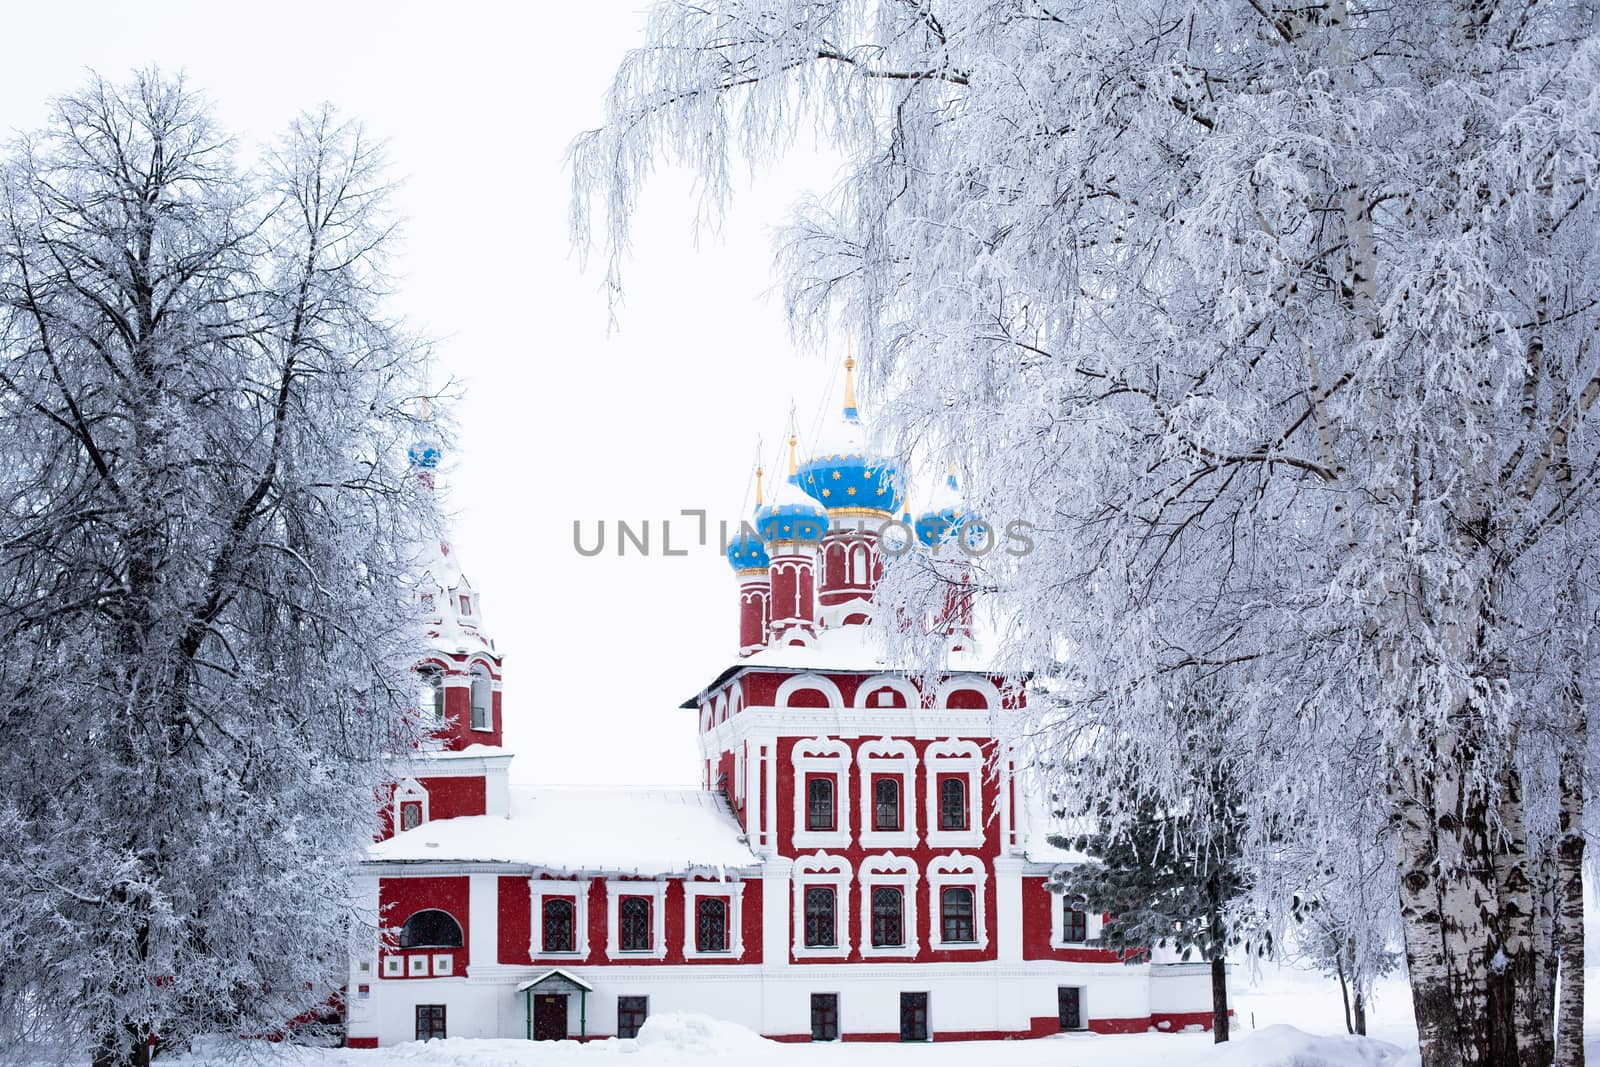 Winter church by foaloce